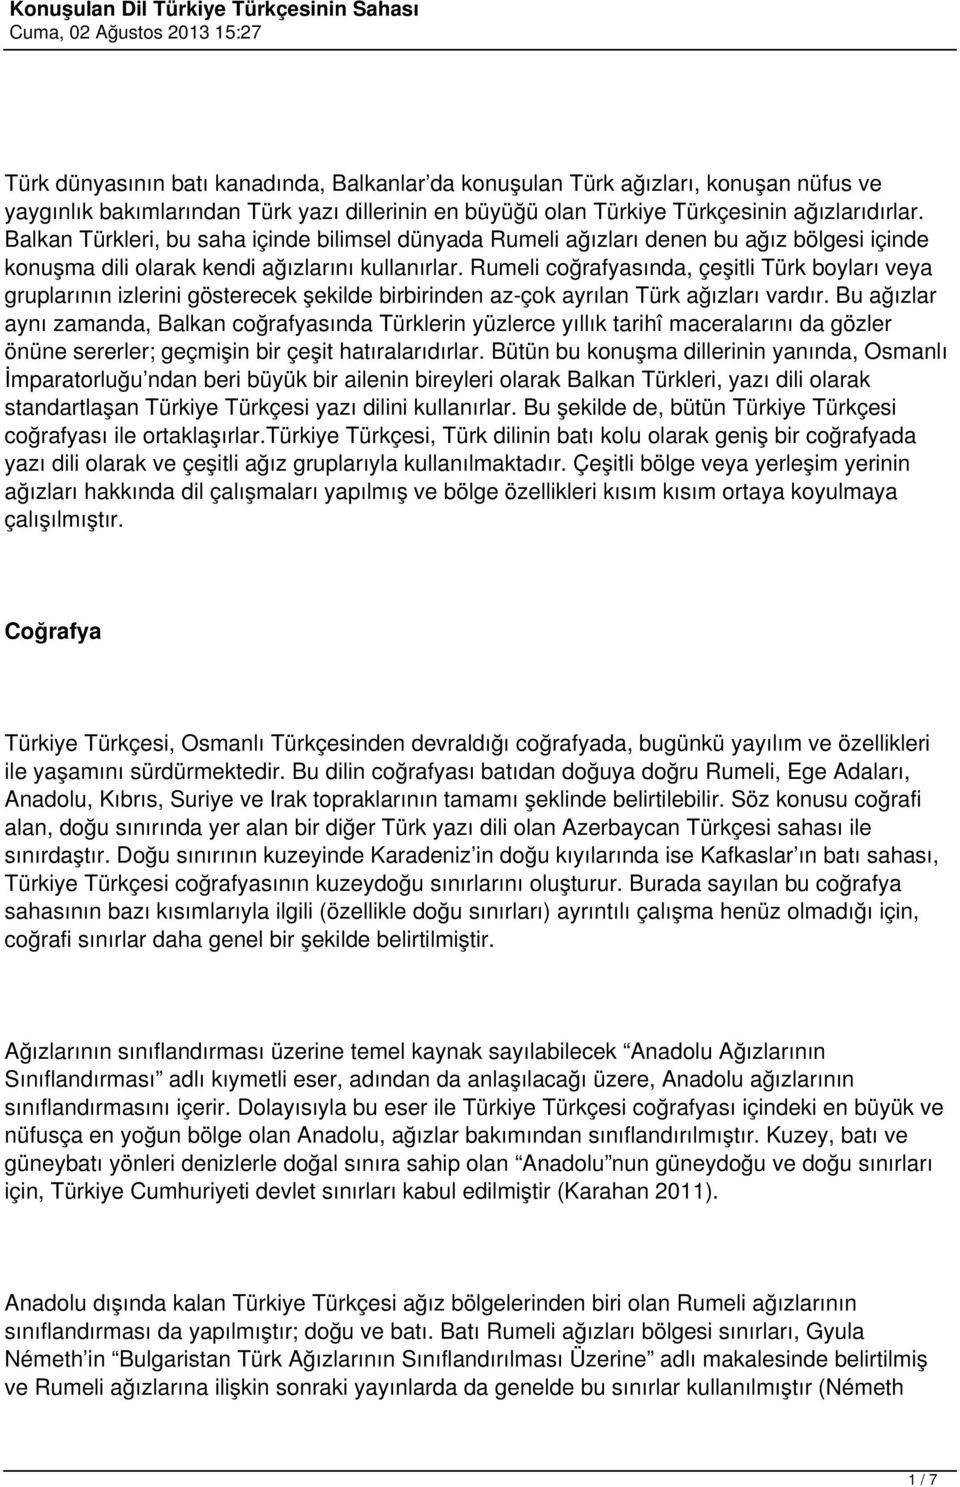 Rumeli coğrafyasında, çeşitli Türk boyları veya gruplarının izlerini gösterecek şekilde birbirinden az-çok ayrılan Türk ağızları vardır.